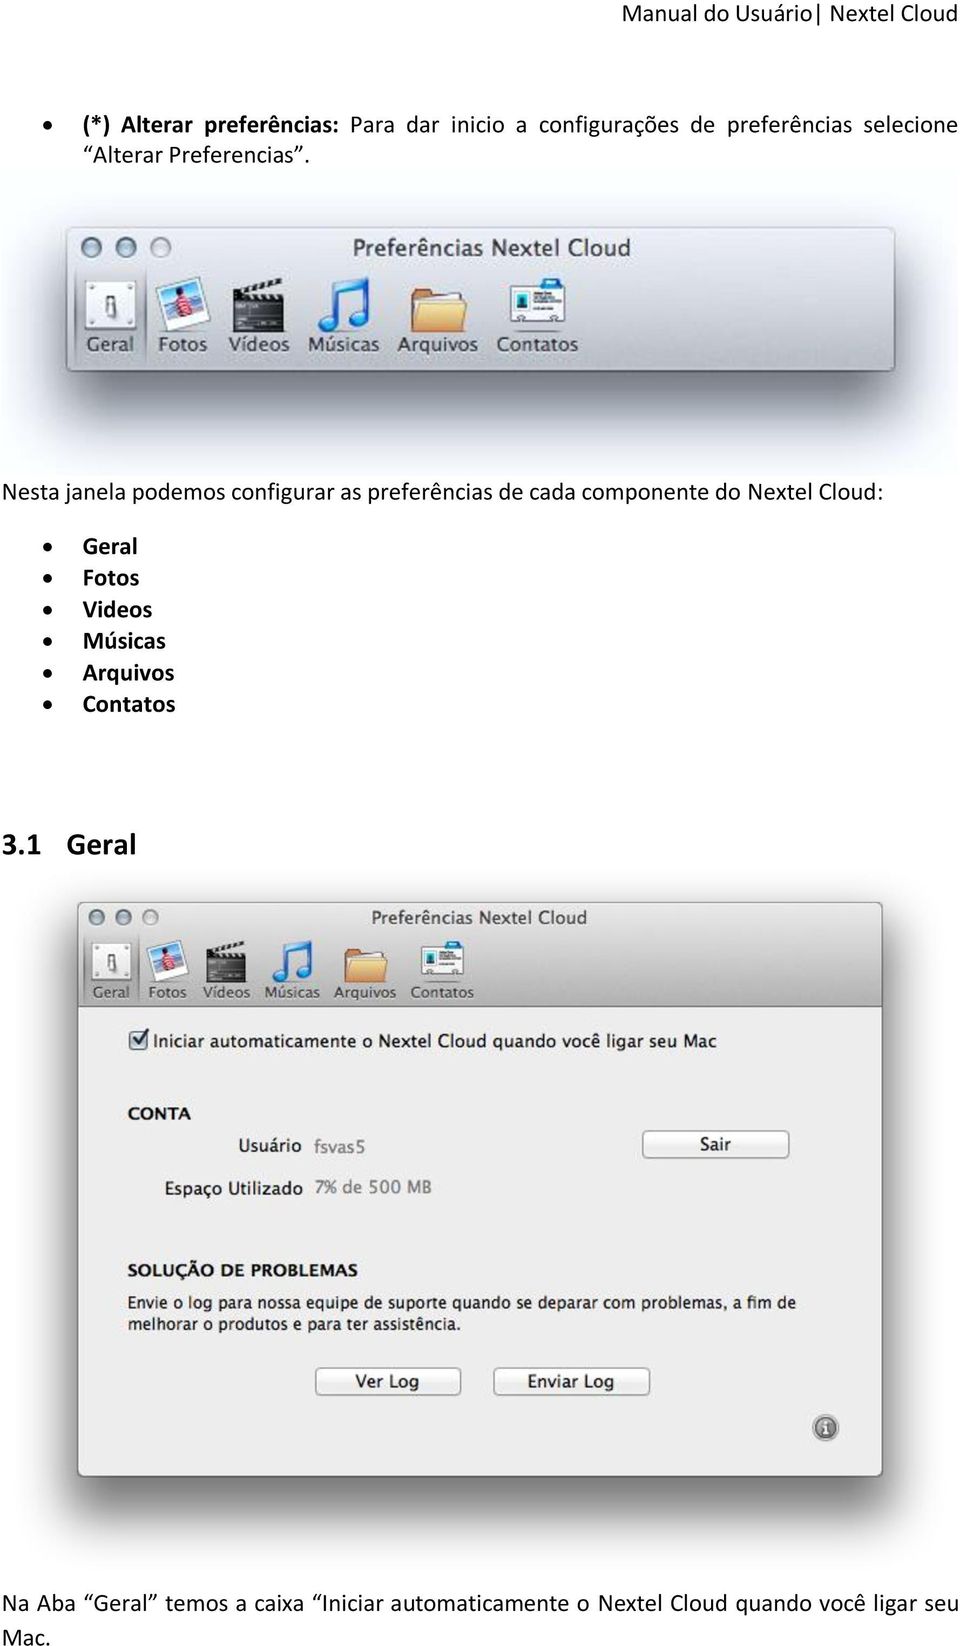 Nesta janela podemos configurar as preferências de cada componente do Nextel Cloud: